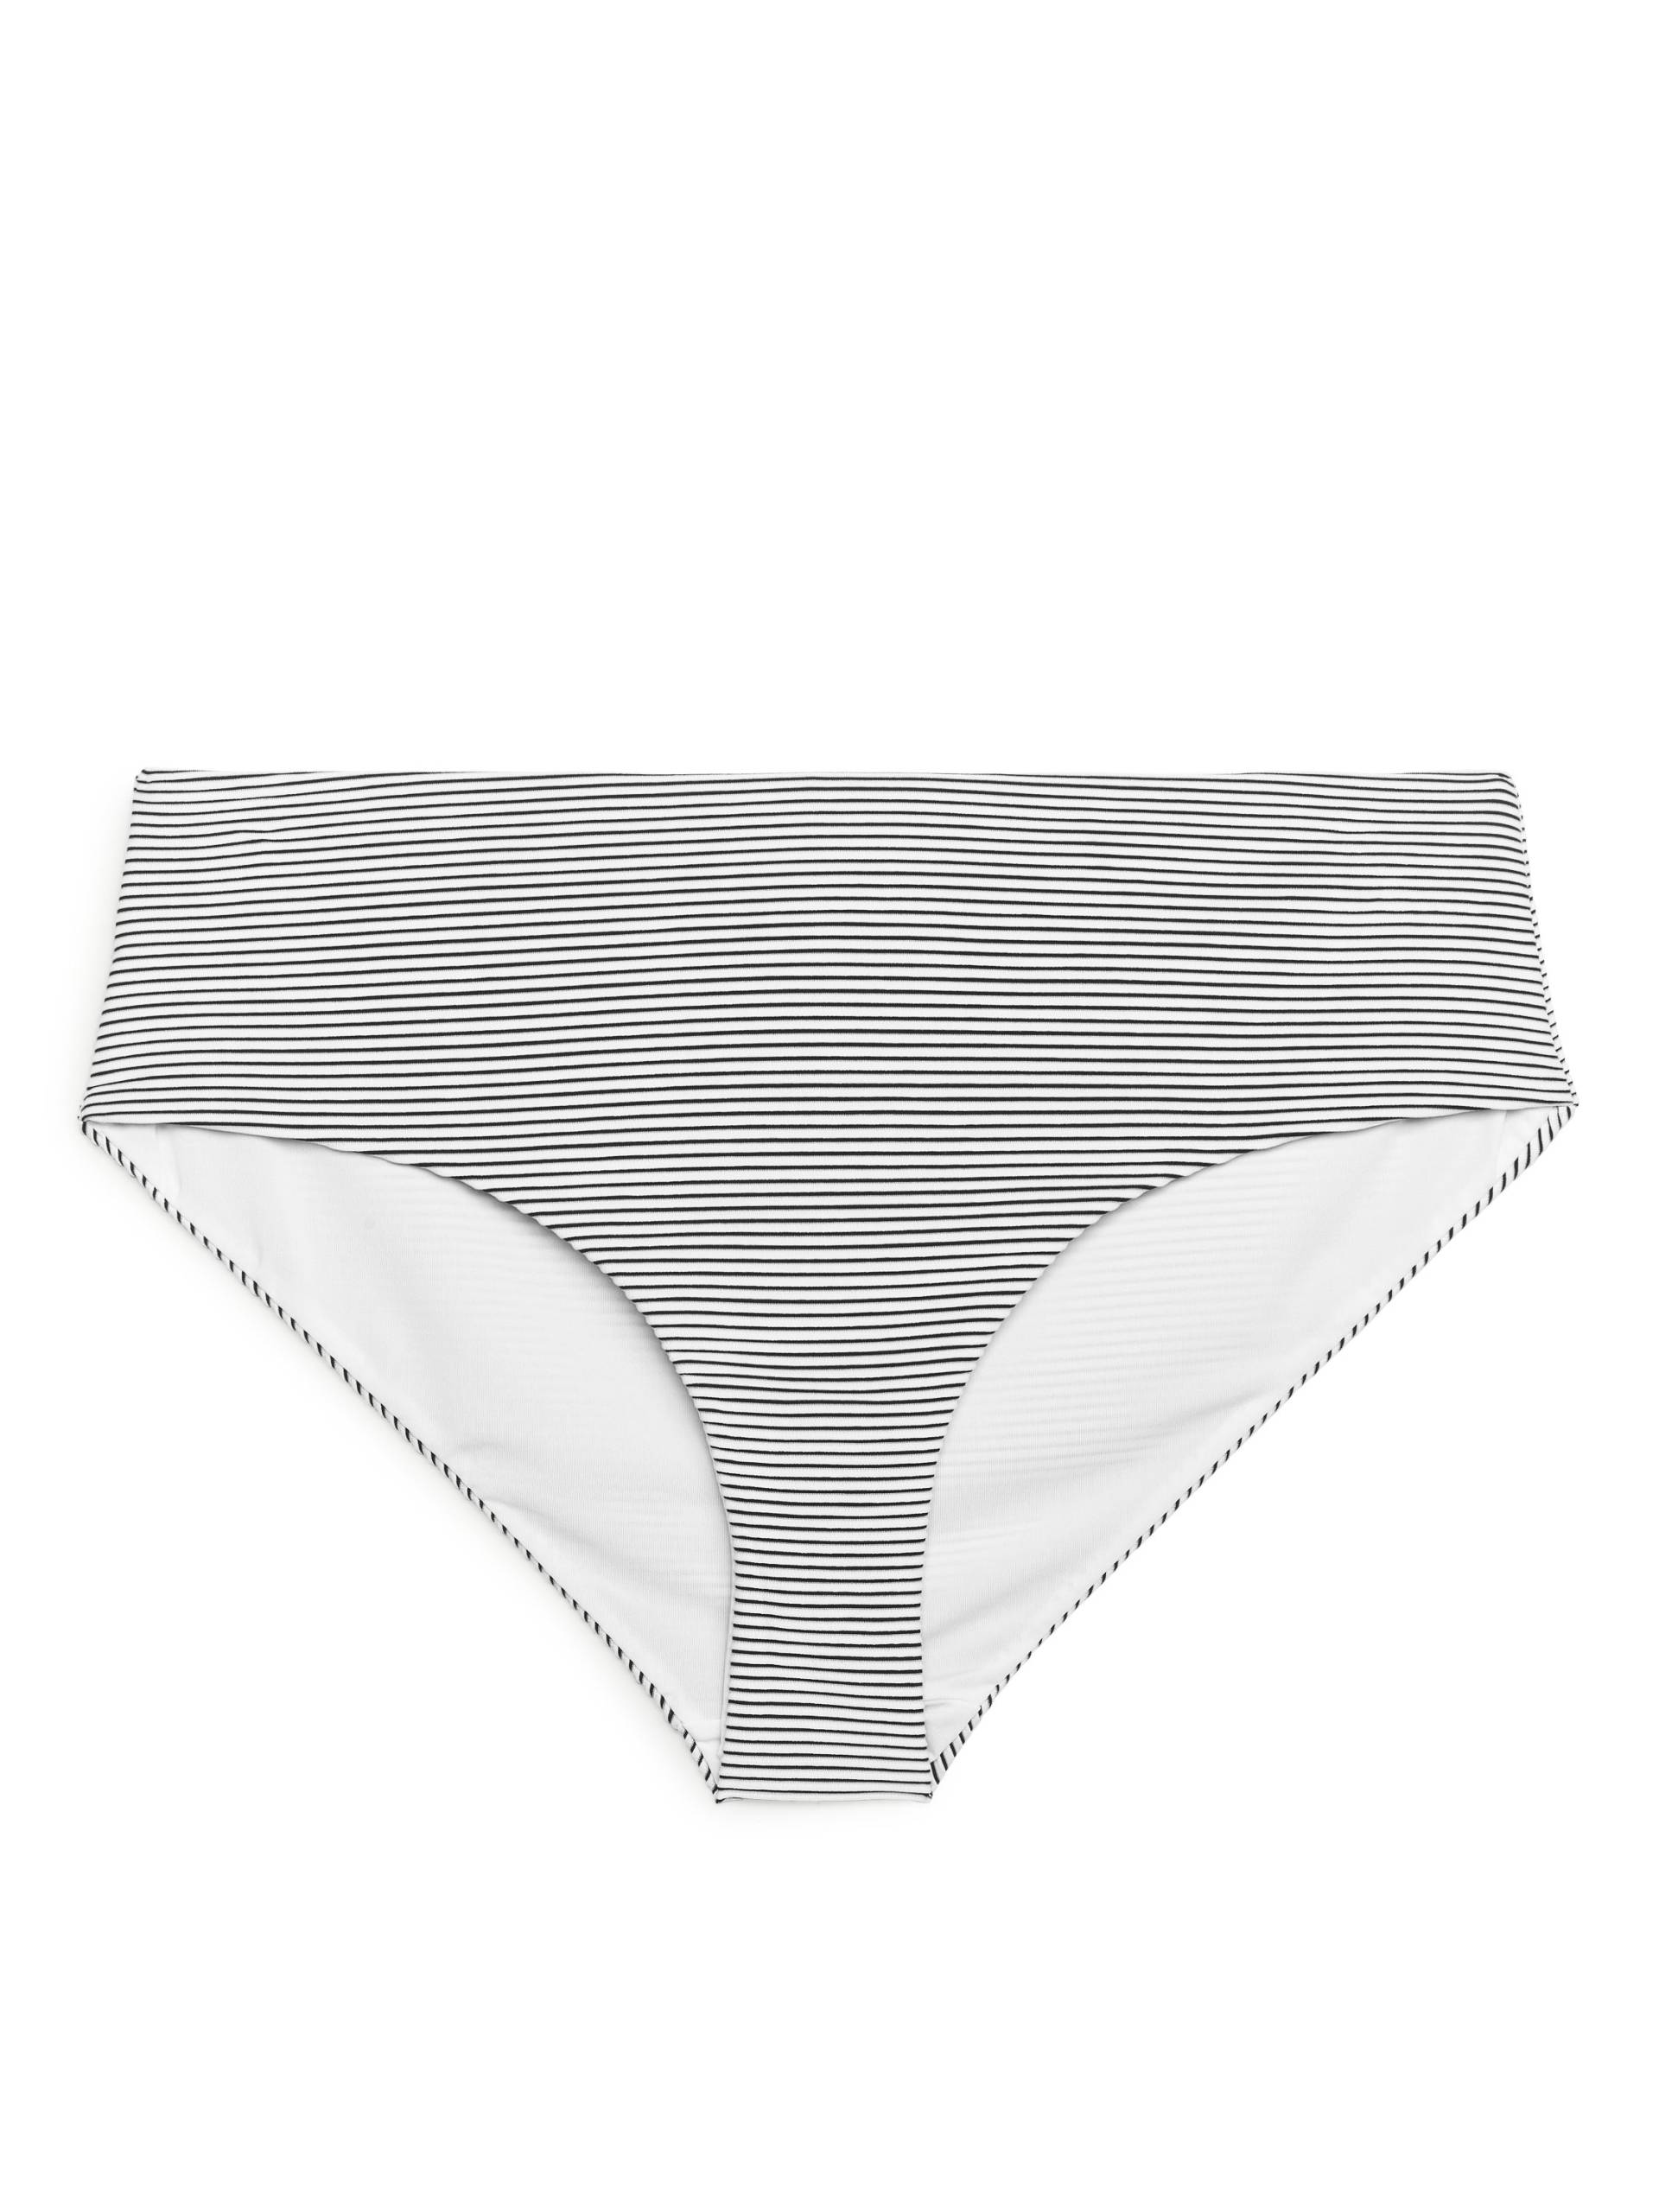 Arket Gestreiftes Bikinihöschen Weiß/Blau, Bikini-Unterteil in Größe 36. Farbe: White/blue von Arket